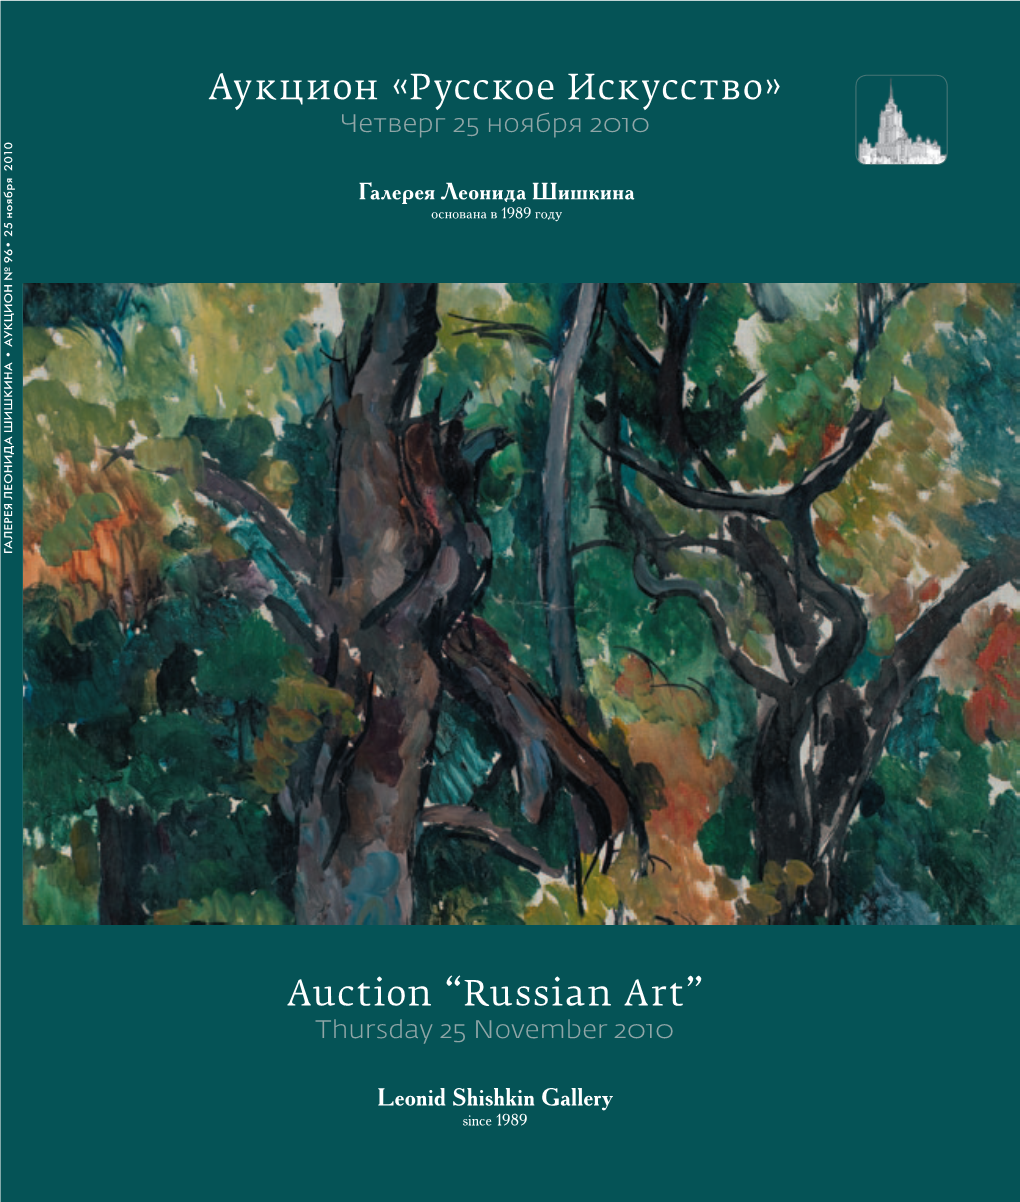 Аукцион Русское Искусство Auction “Russian Art”